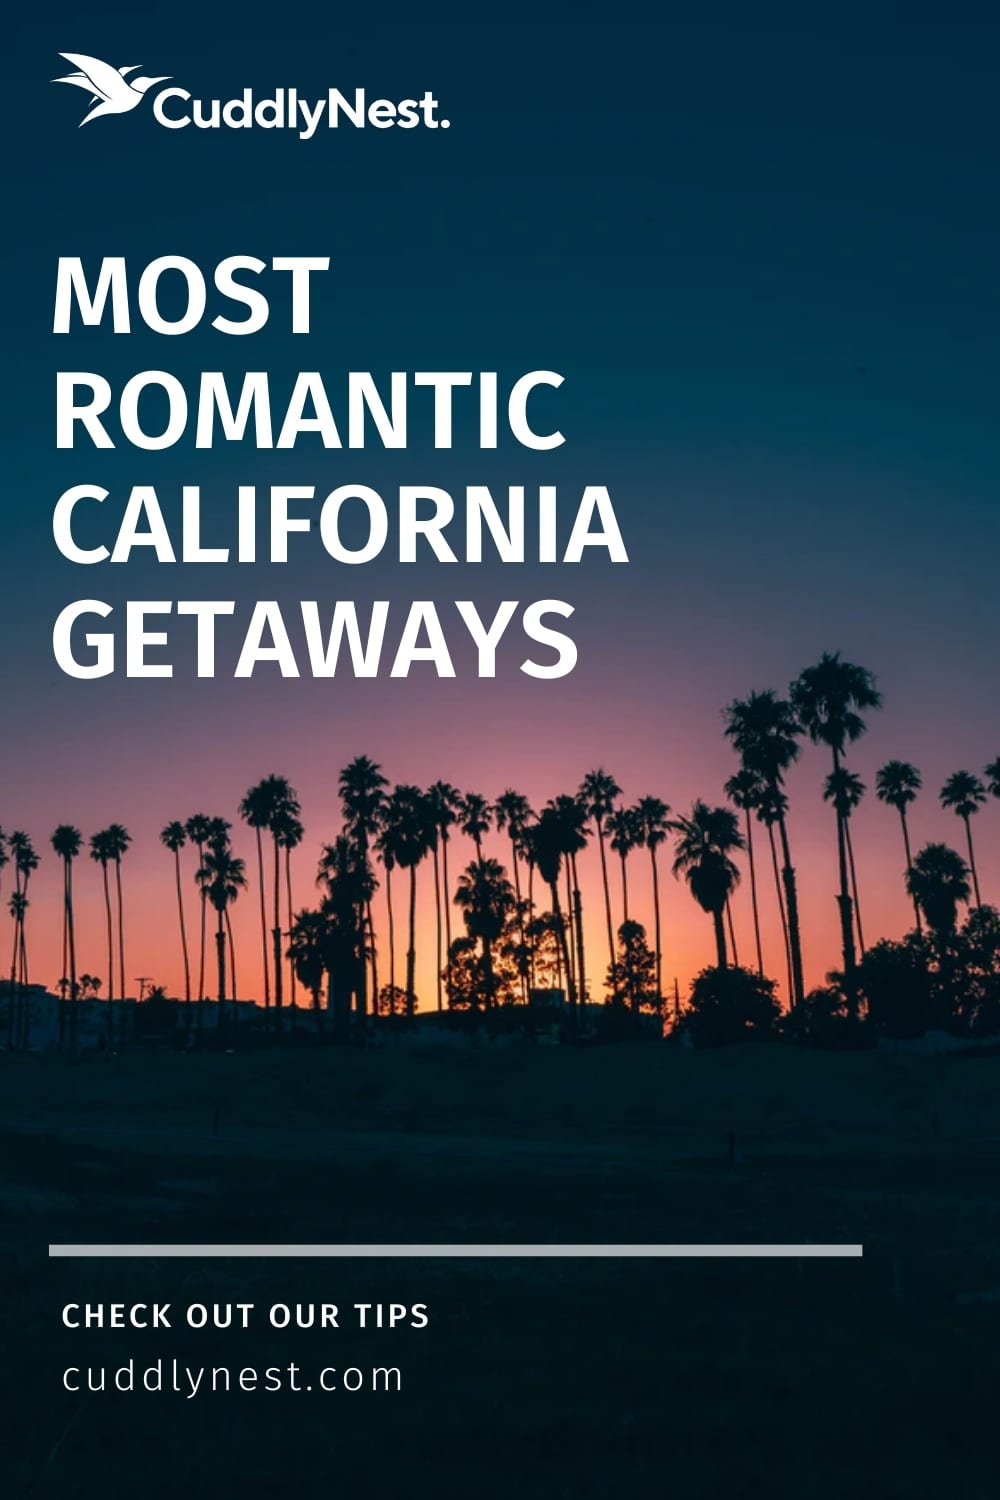 affordable romantic getaways in california